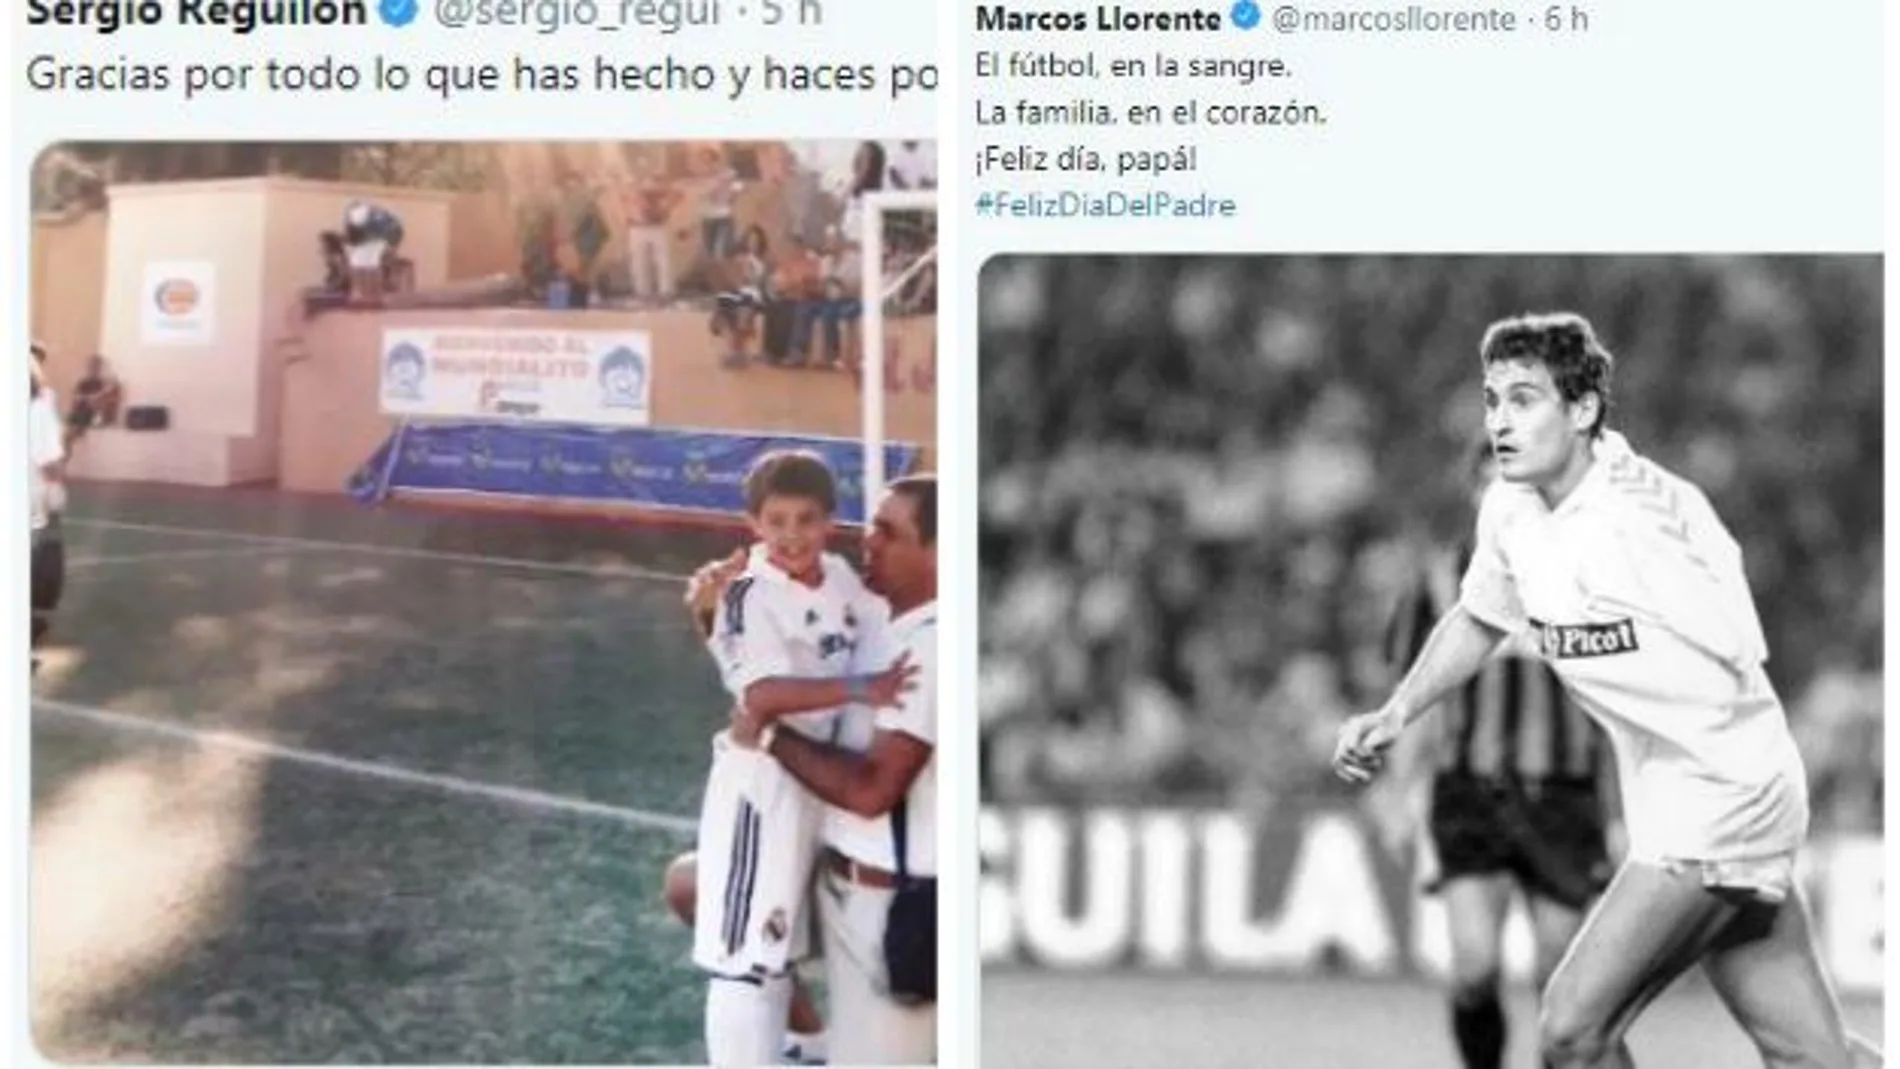 Los tuits de Sergio Reguilón y de Marcos Llorente